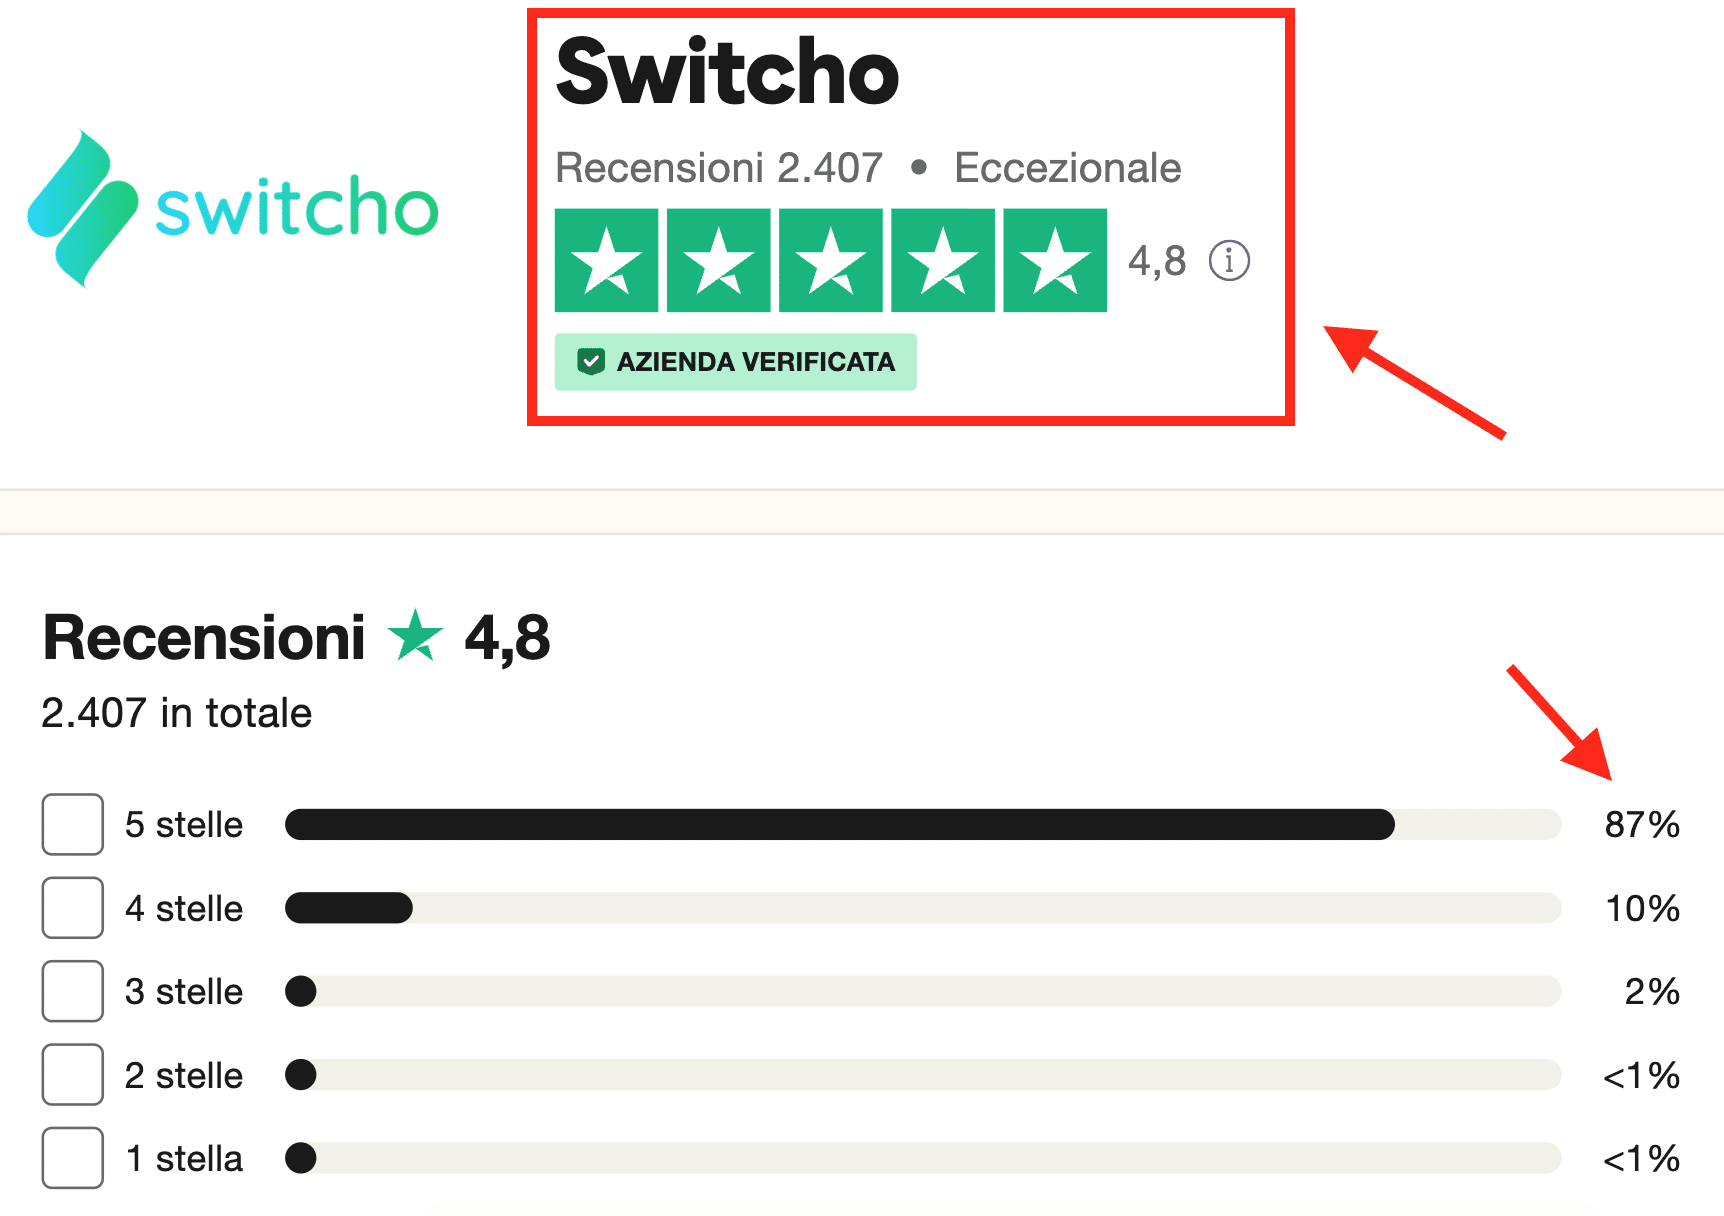 Switcho ha 2407 recensioni quasi tutte positive